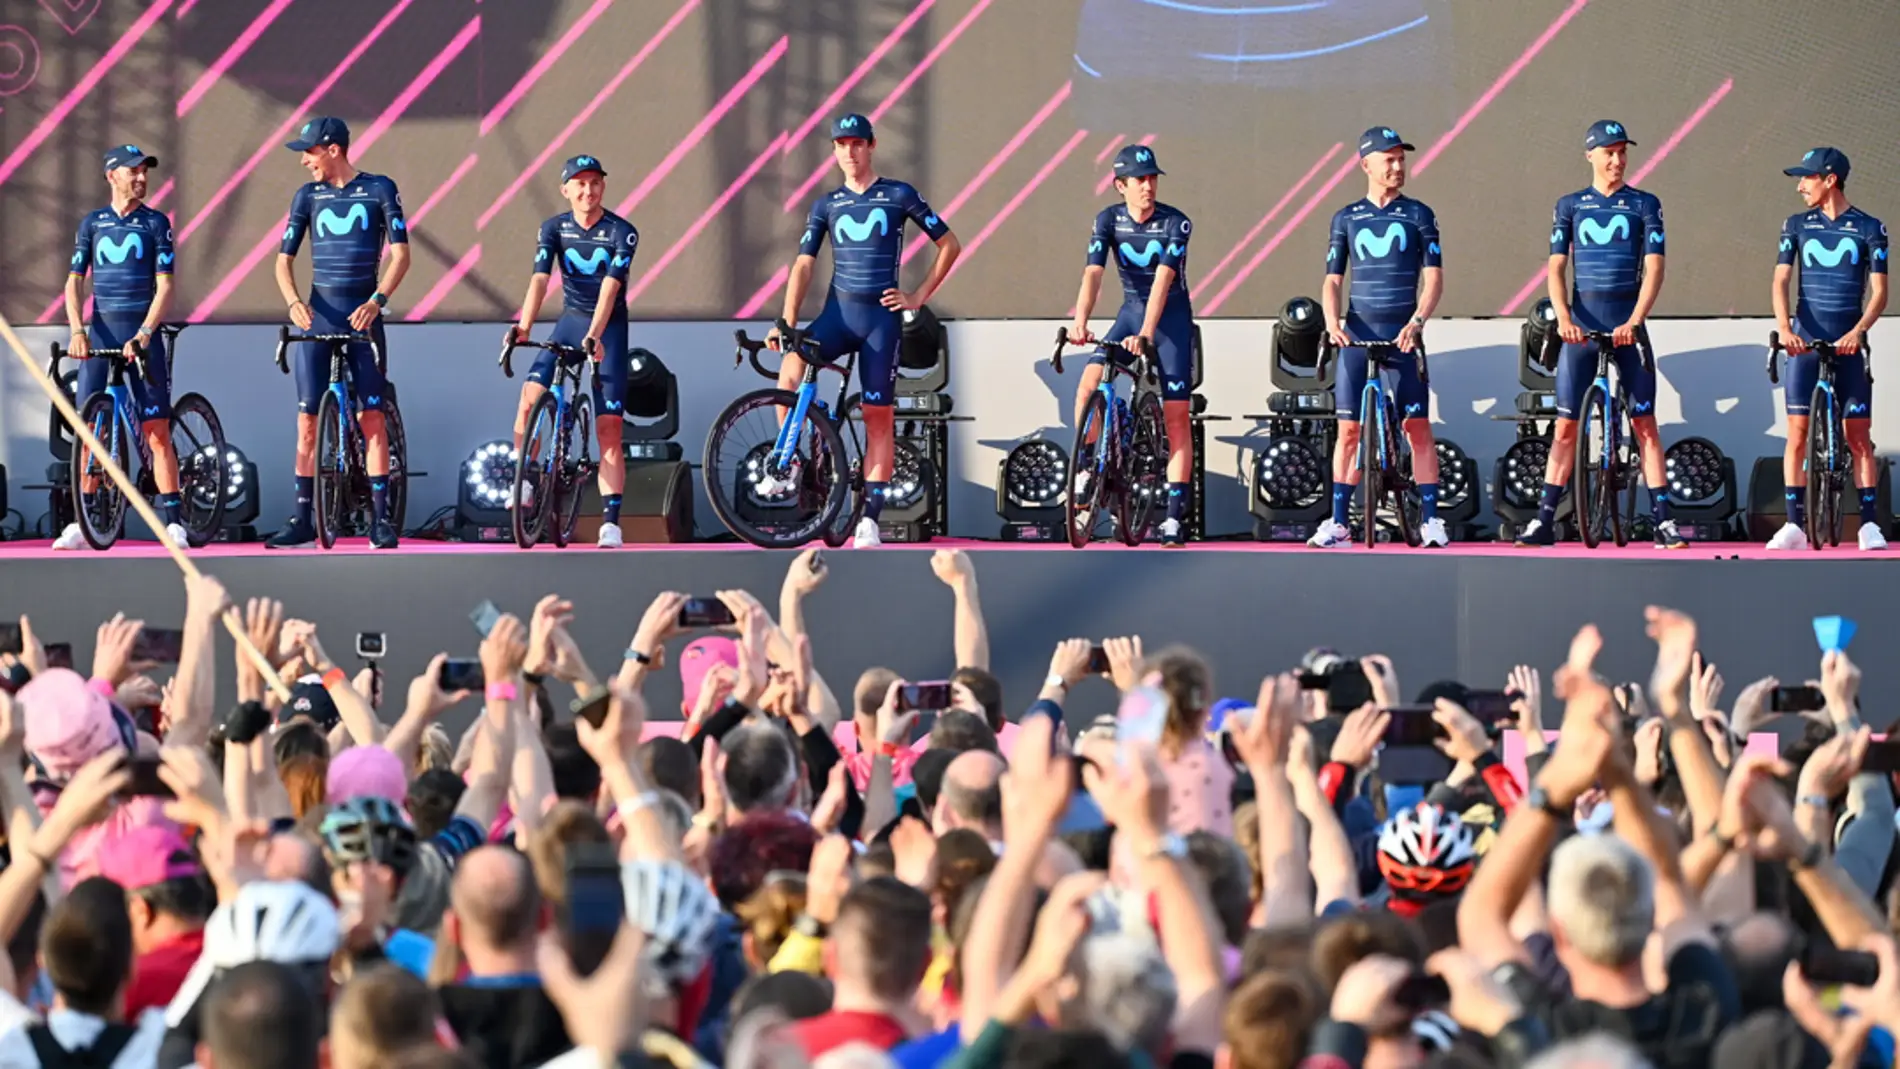  Landa y Valverde, protagonistas españoles en el Giro de Italia